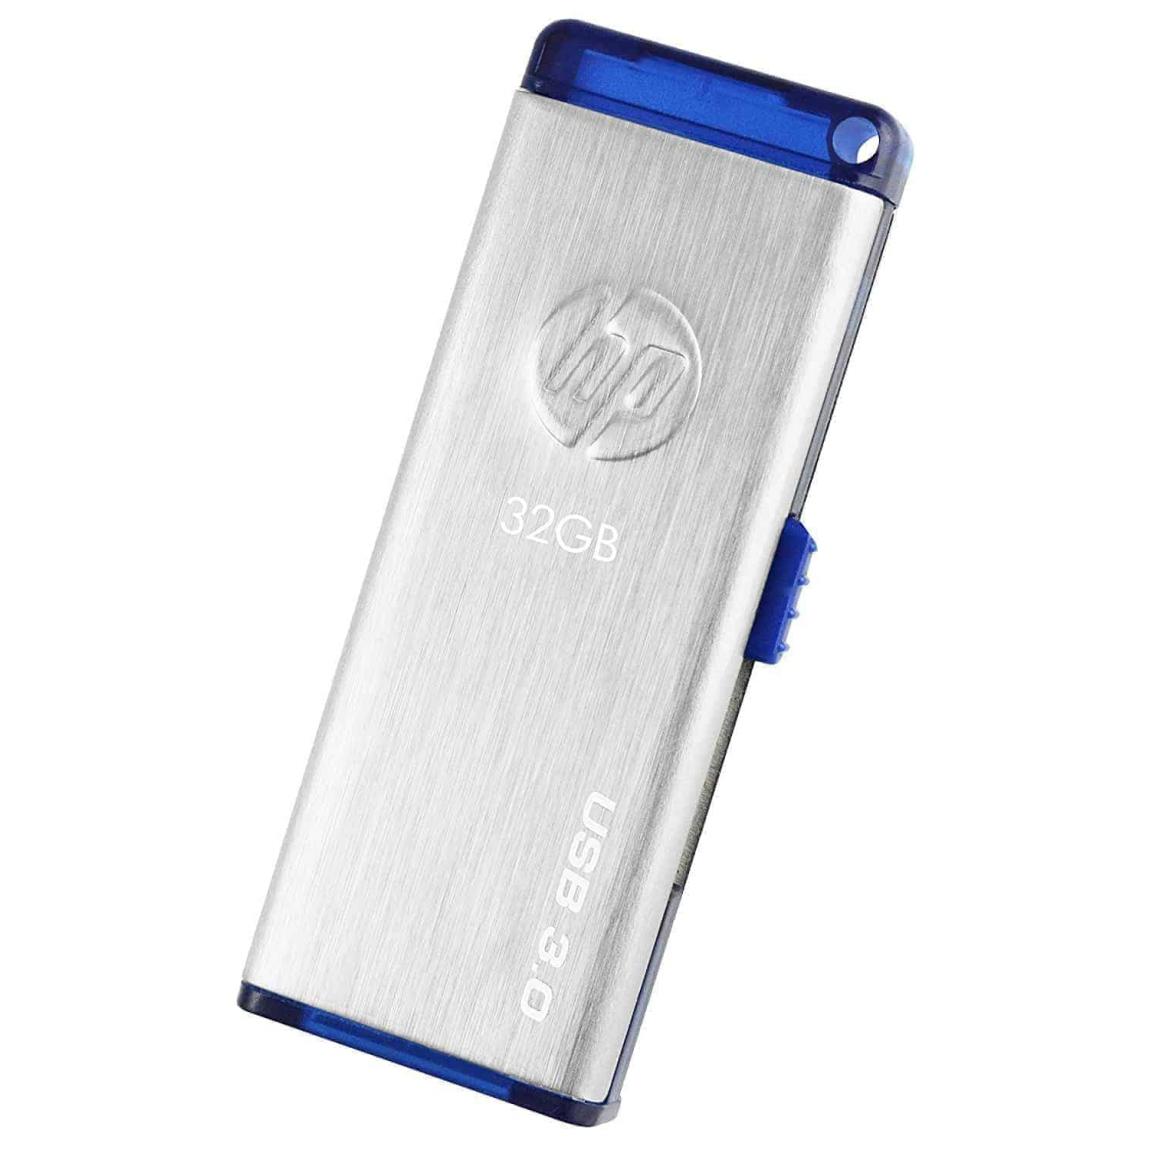 HP x730w USB 3.0 32GB Flash Drive, Kartmy